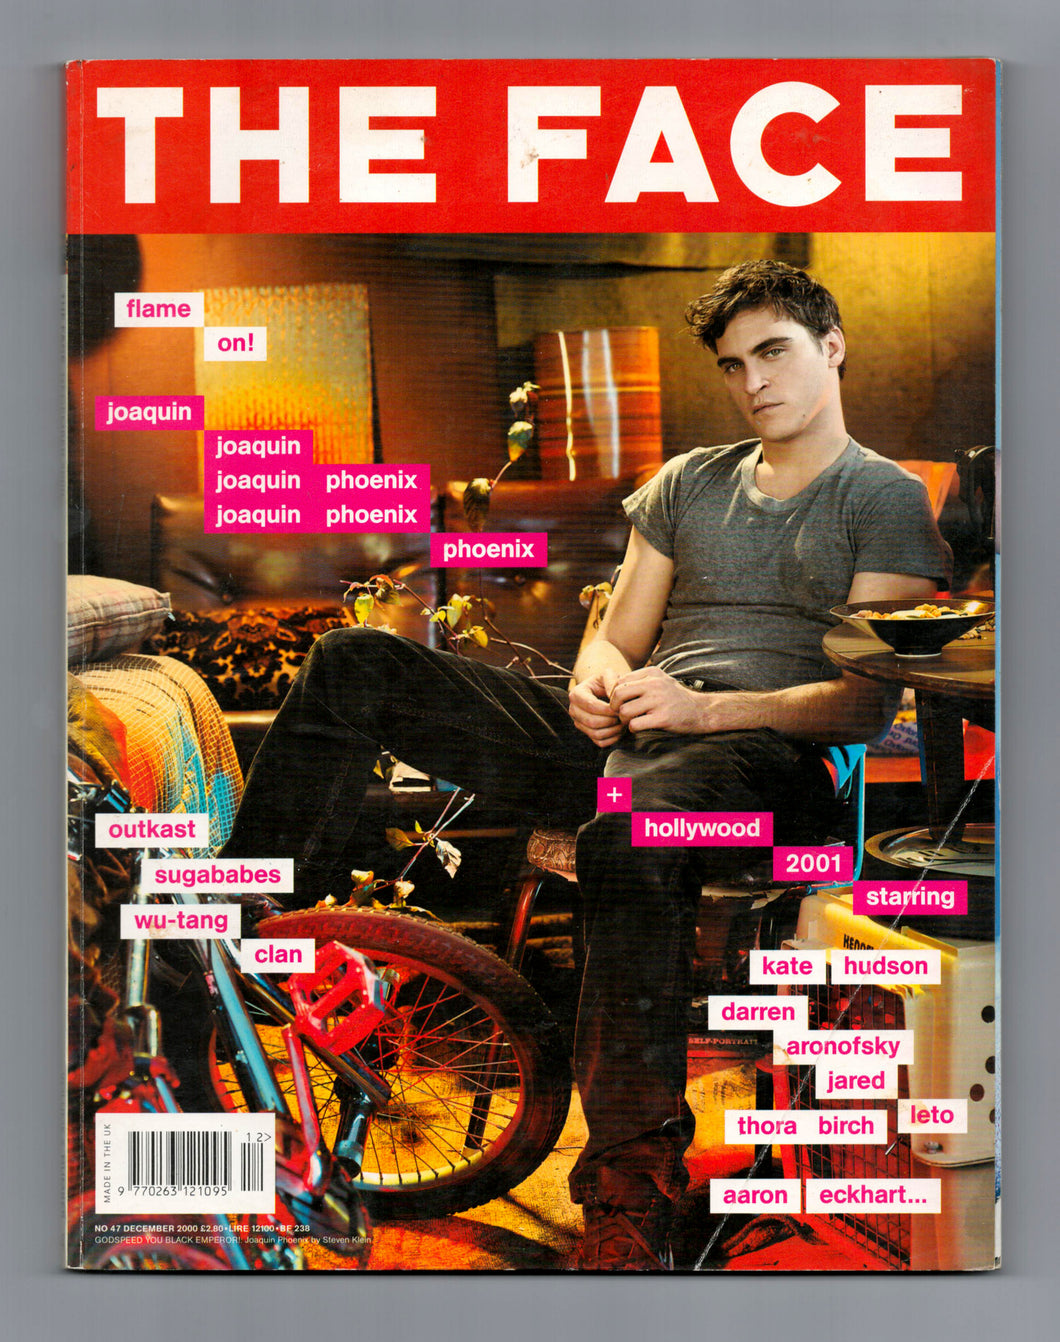 The Face Vol 3 No 47 Dec 2000